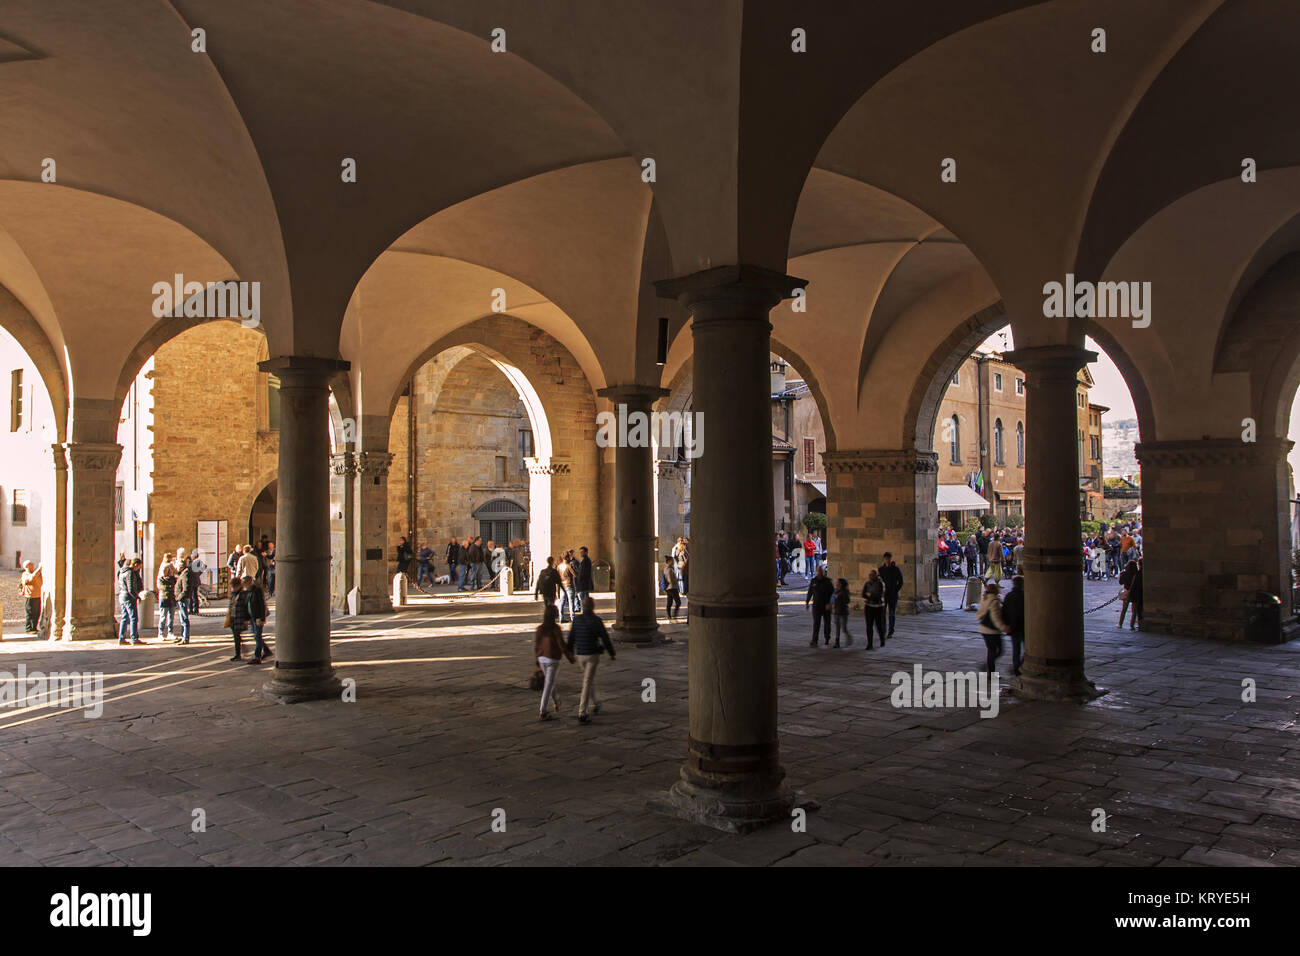 La antigua arcade medieval de Bérgamo, ciudad alta Foto de stock